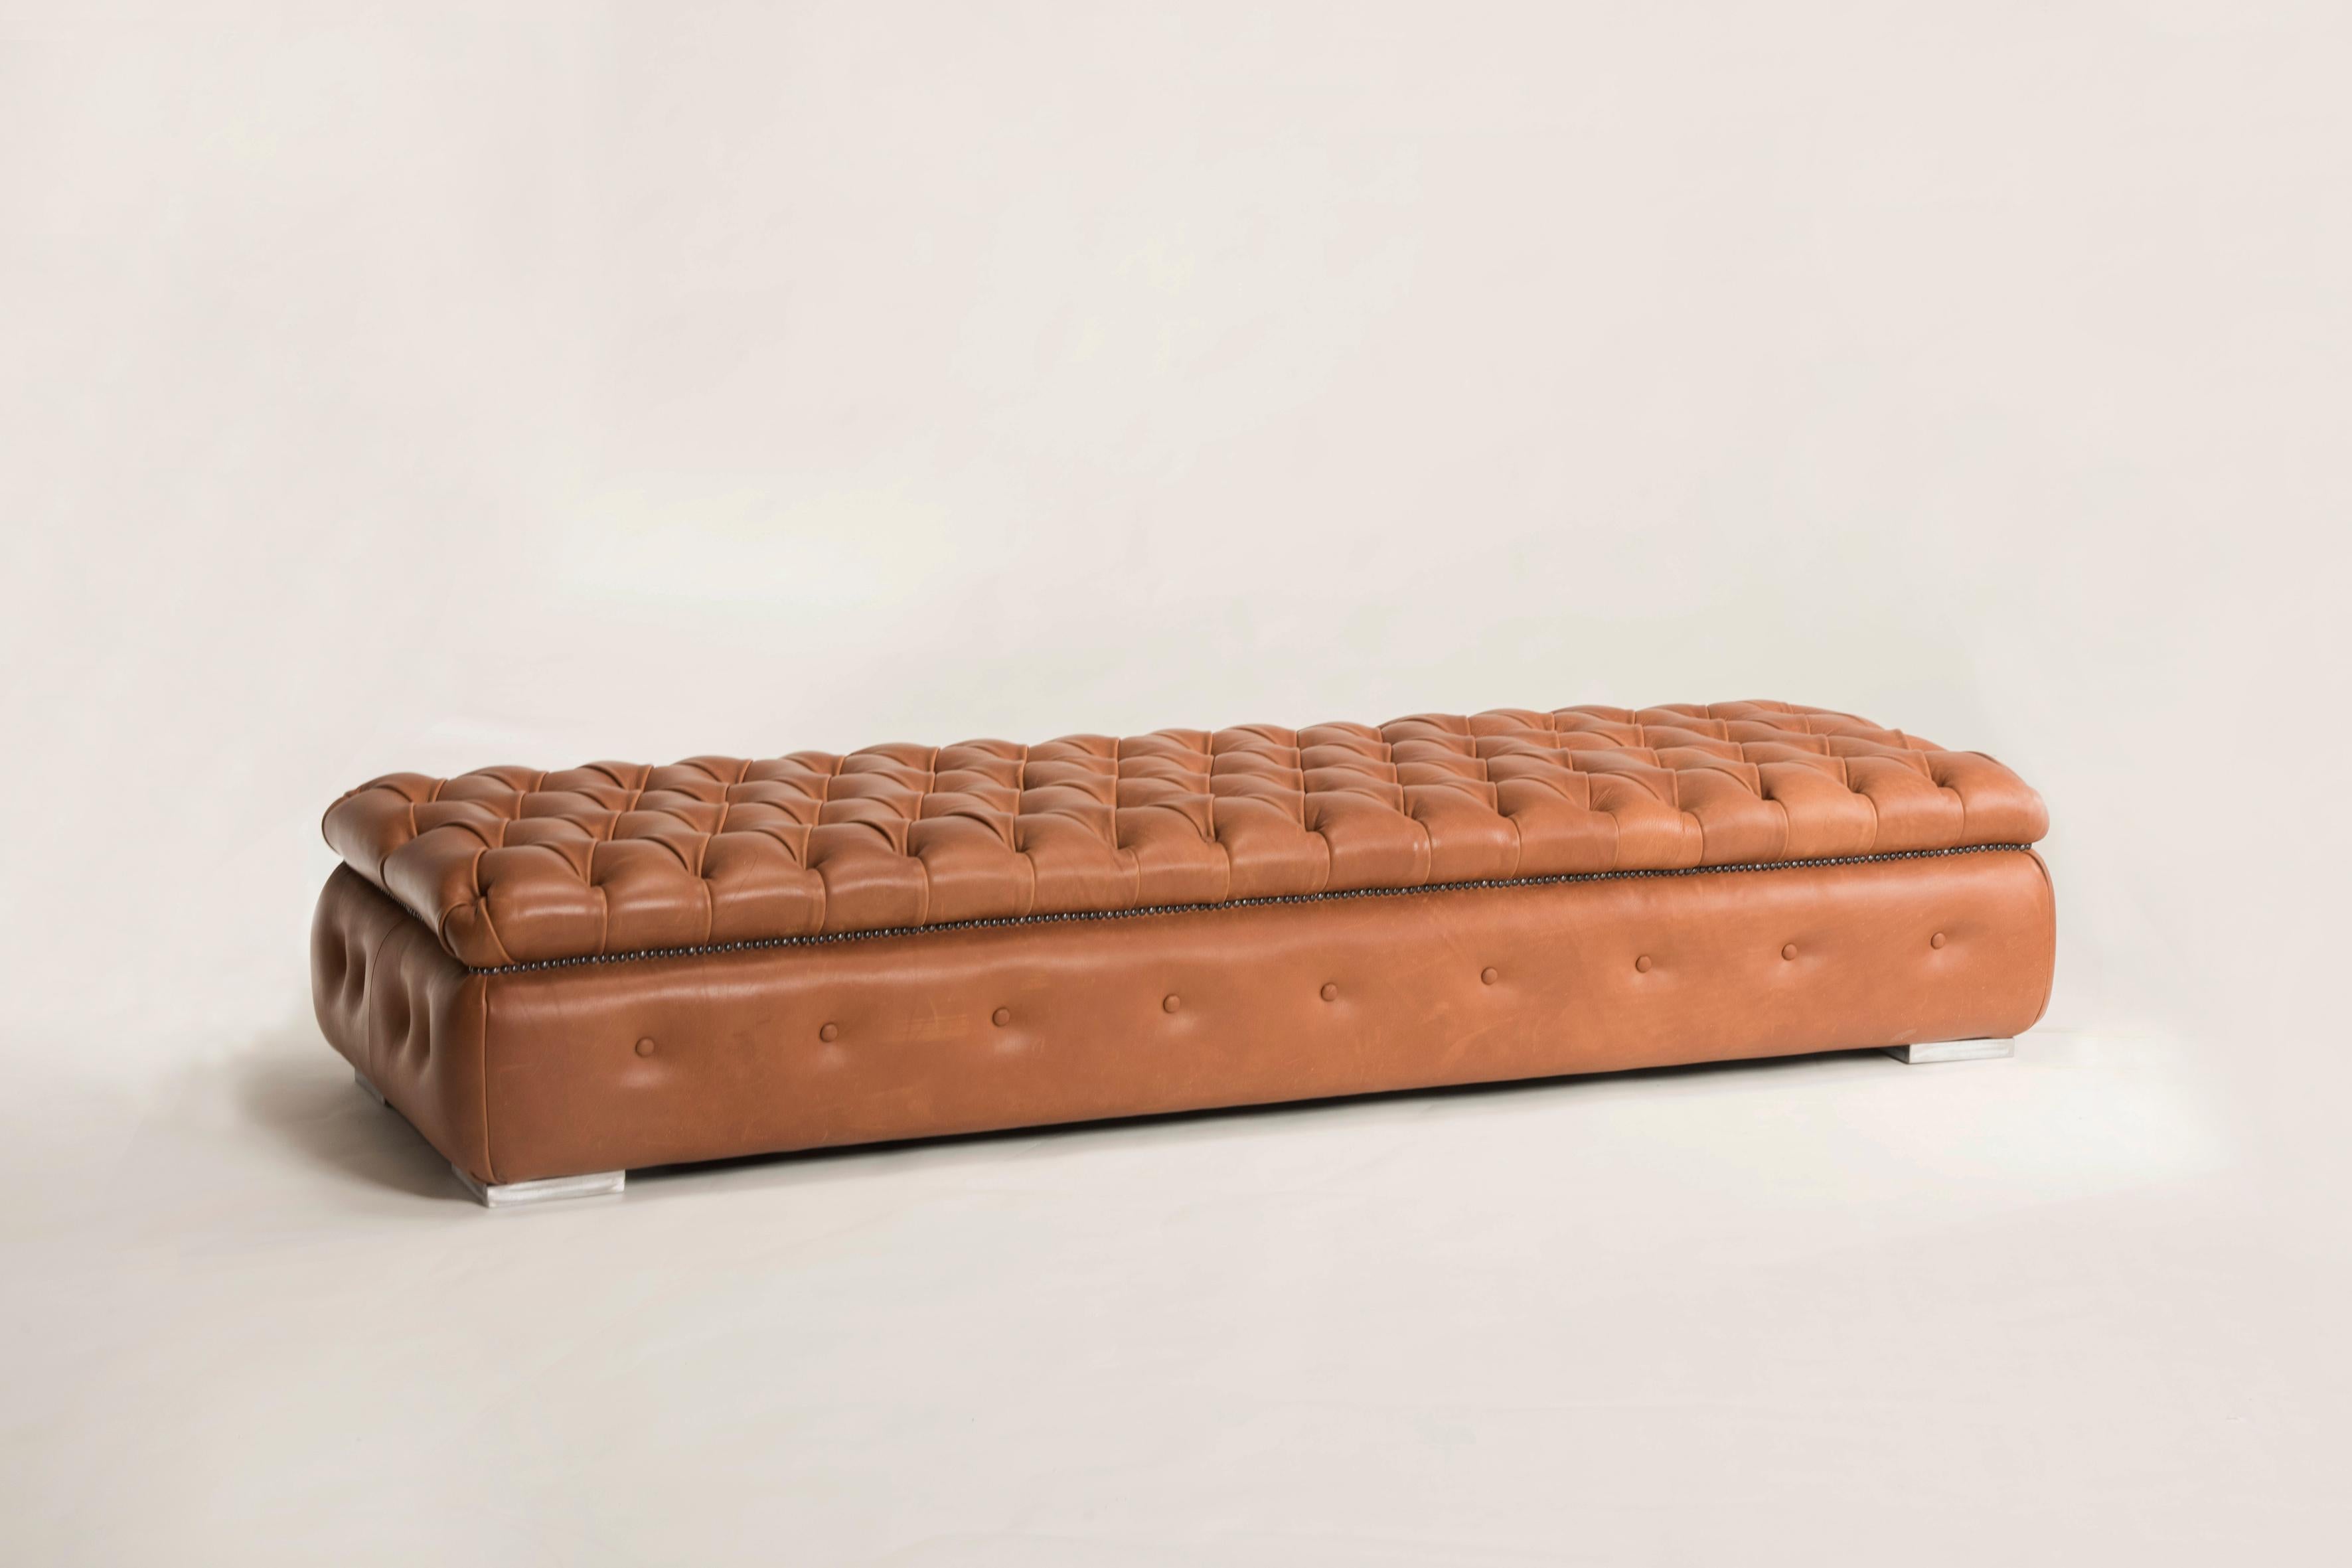 Ce pouf fait partie de la nouvelle collection de poufs et de meubles personnalisables de Pescetta.

Une collection artisanale entièrement fabriquée en Italie. Selon la taille et la finition choisies, ces meubles personnalisables se prêtent aussi